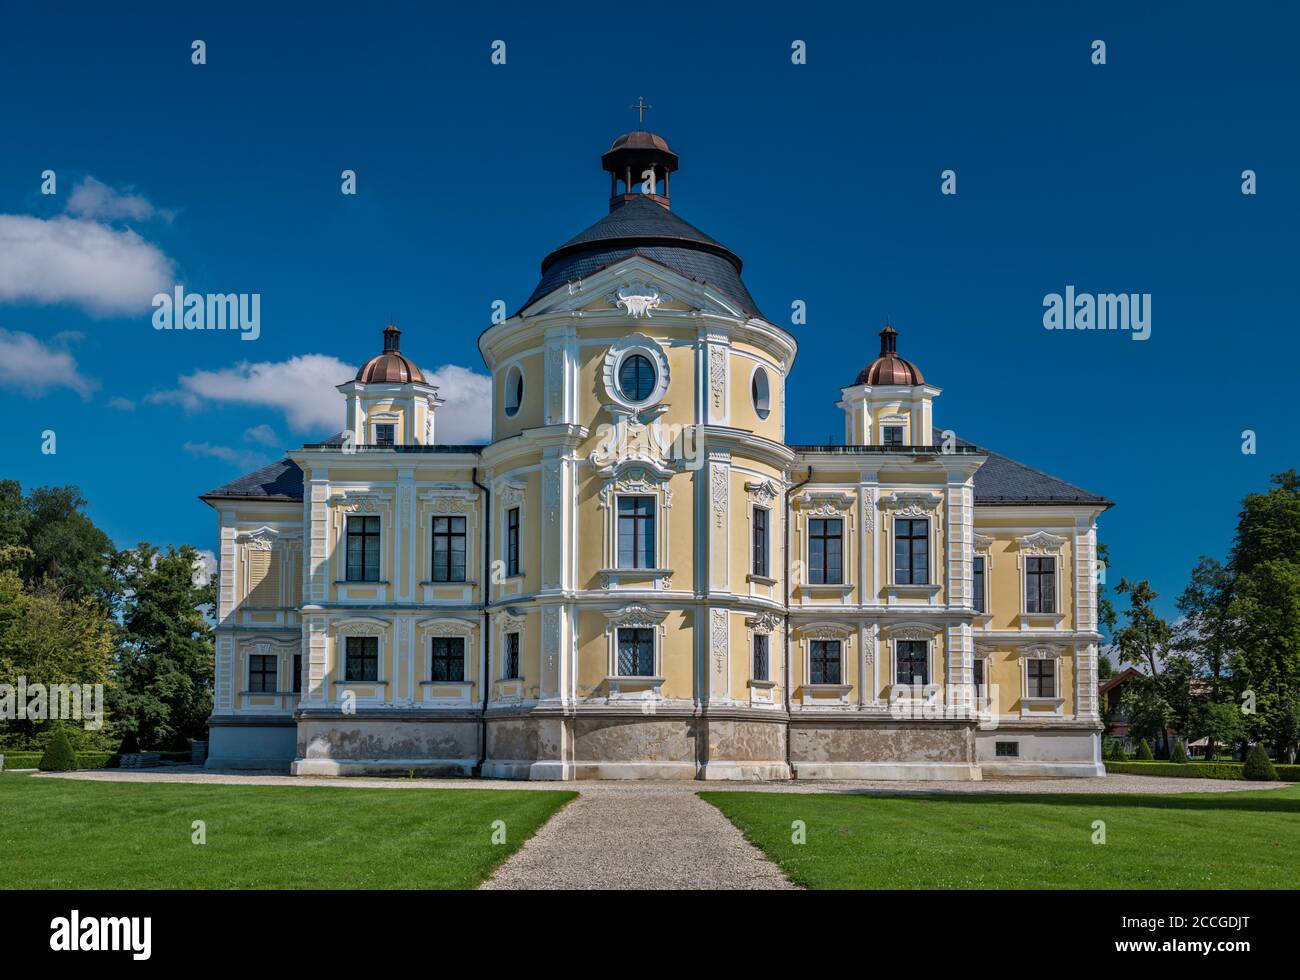 Barockpalast, 17. Jahrhundert, in der Stadt Kravare, in der Nähe von Opava, Mährisch-Schlesische Region, Schlesien, Tschechische Republik Stockfoto